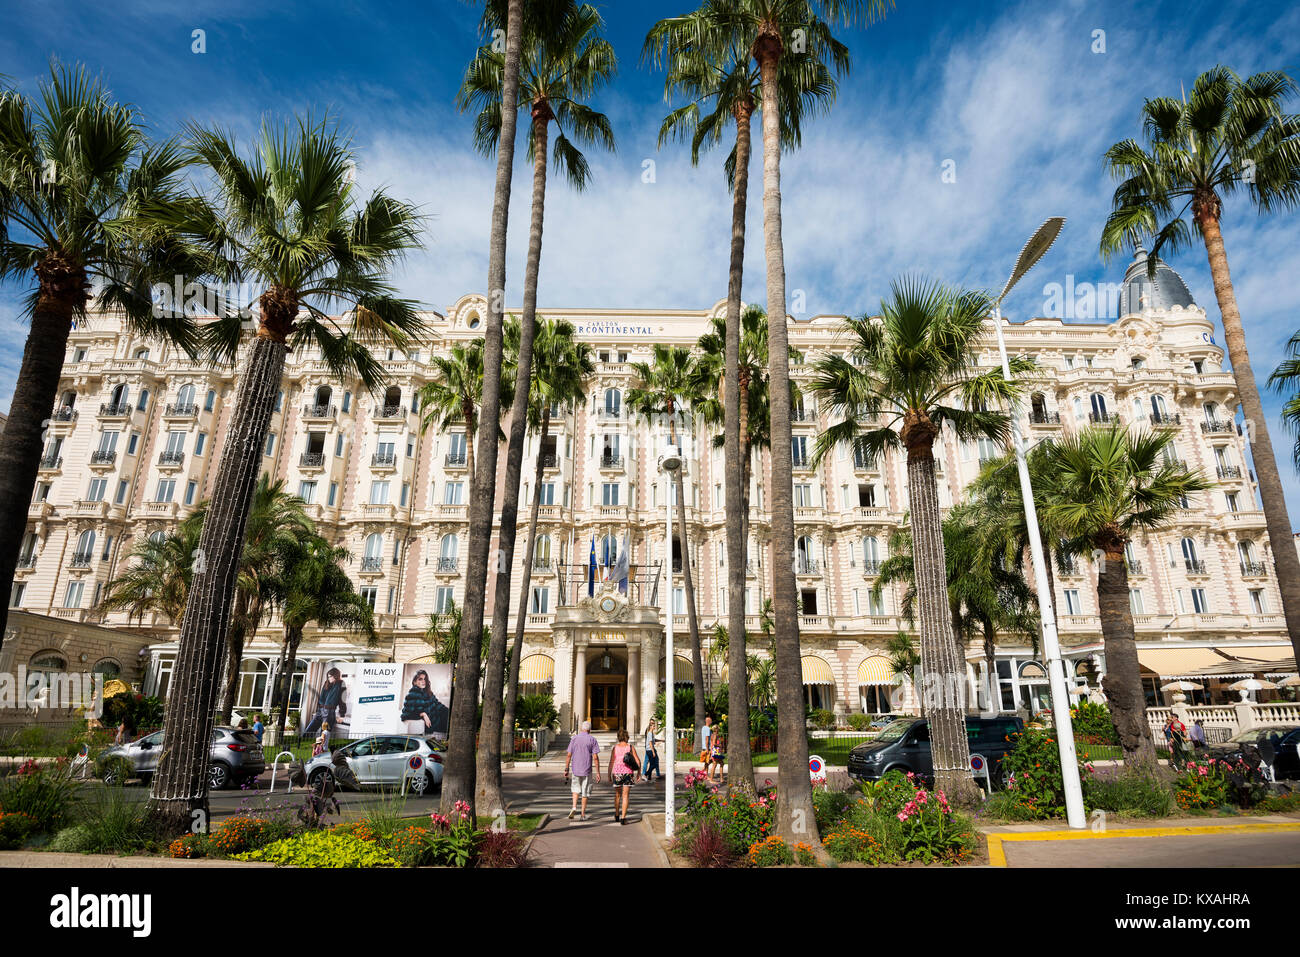 Hotel Carlton, Cannes, Côte d' Azur, Provence-Alpes-Côte d' Azur, South of France, France Stock Photo